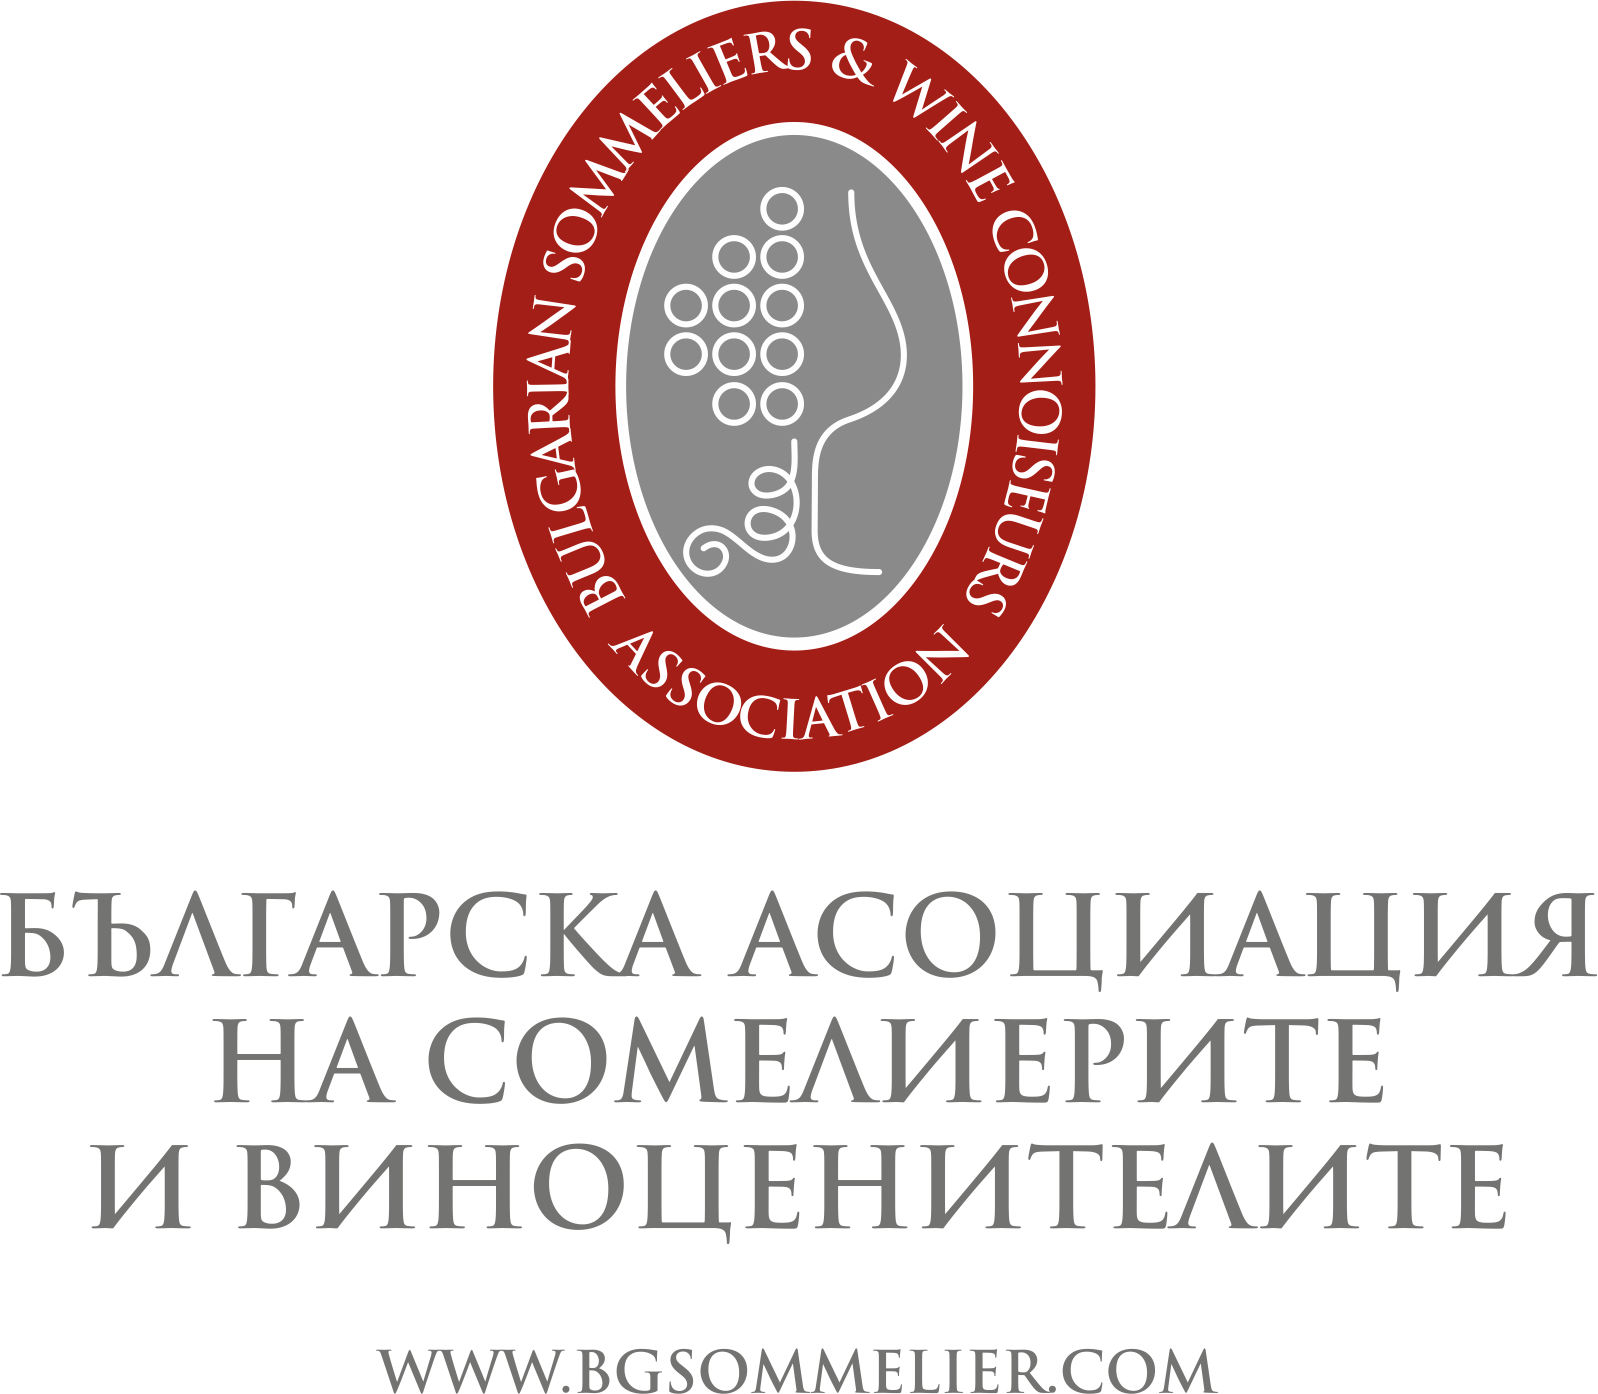 Болгарская_ассоциация_виноценителей